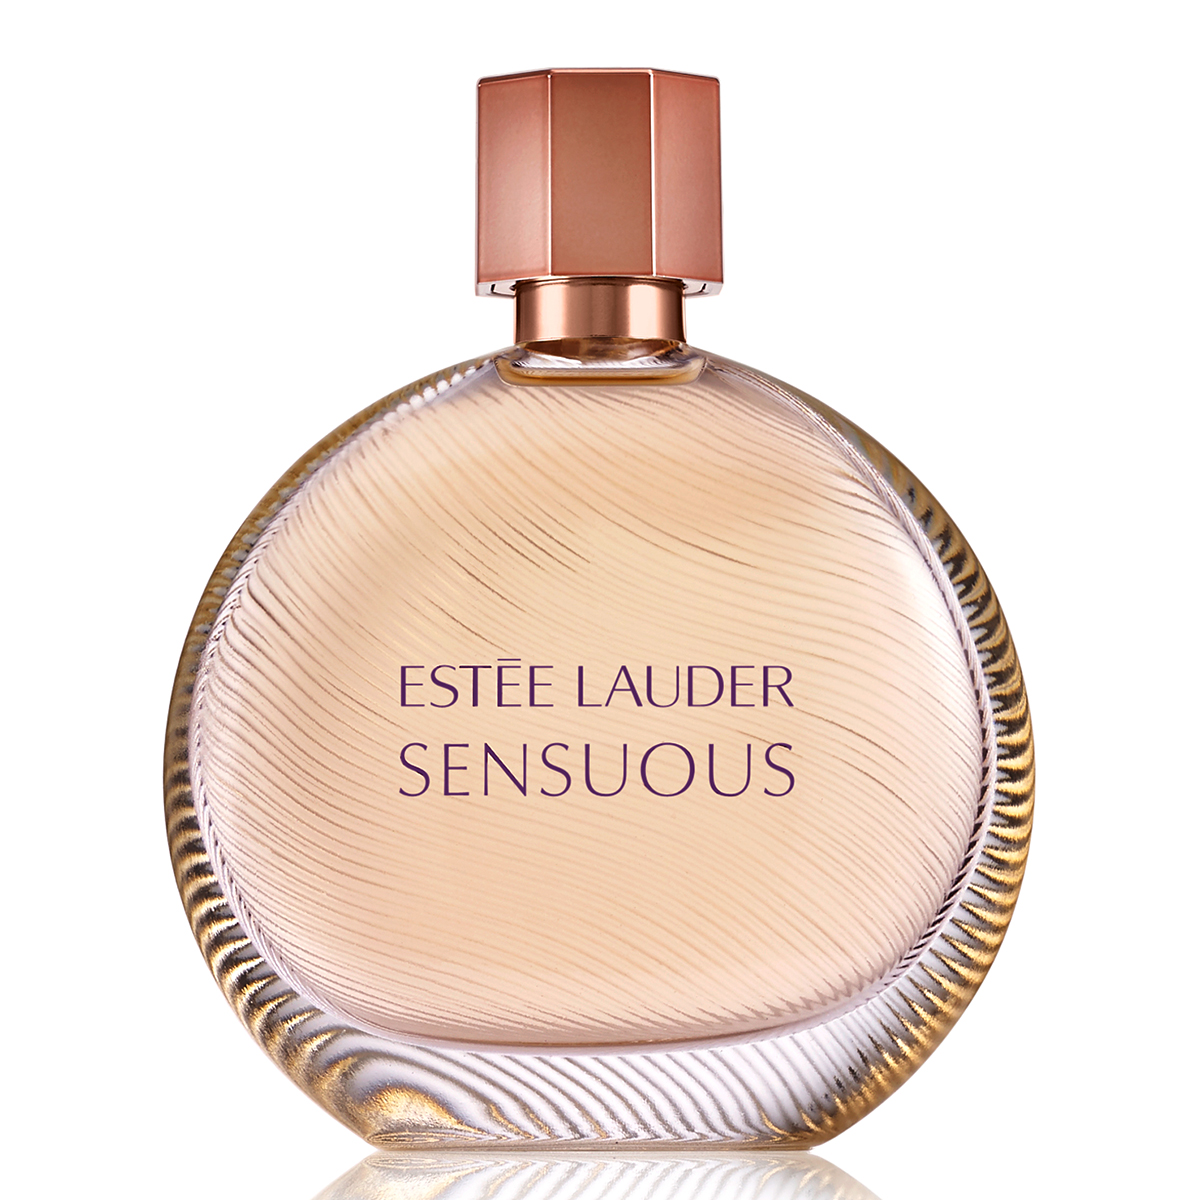 Estee Lauder(tm) Sensuous Eau De Parfum Spray